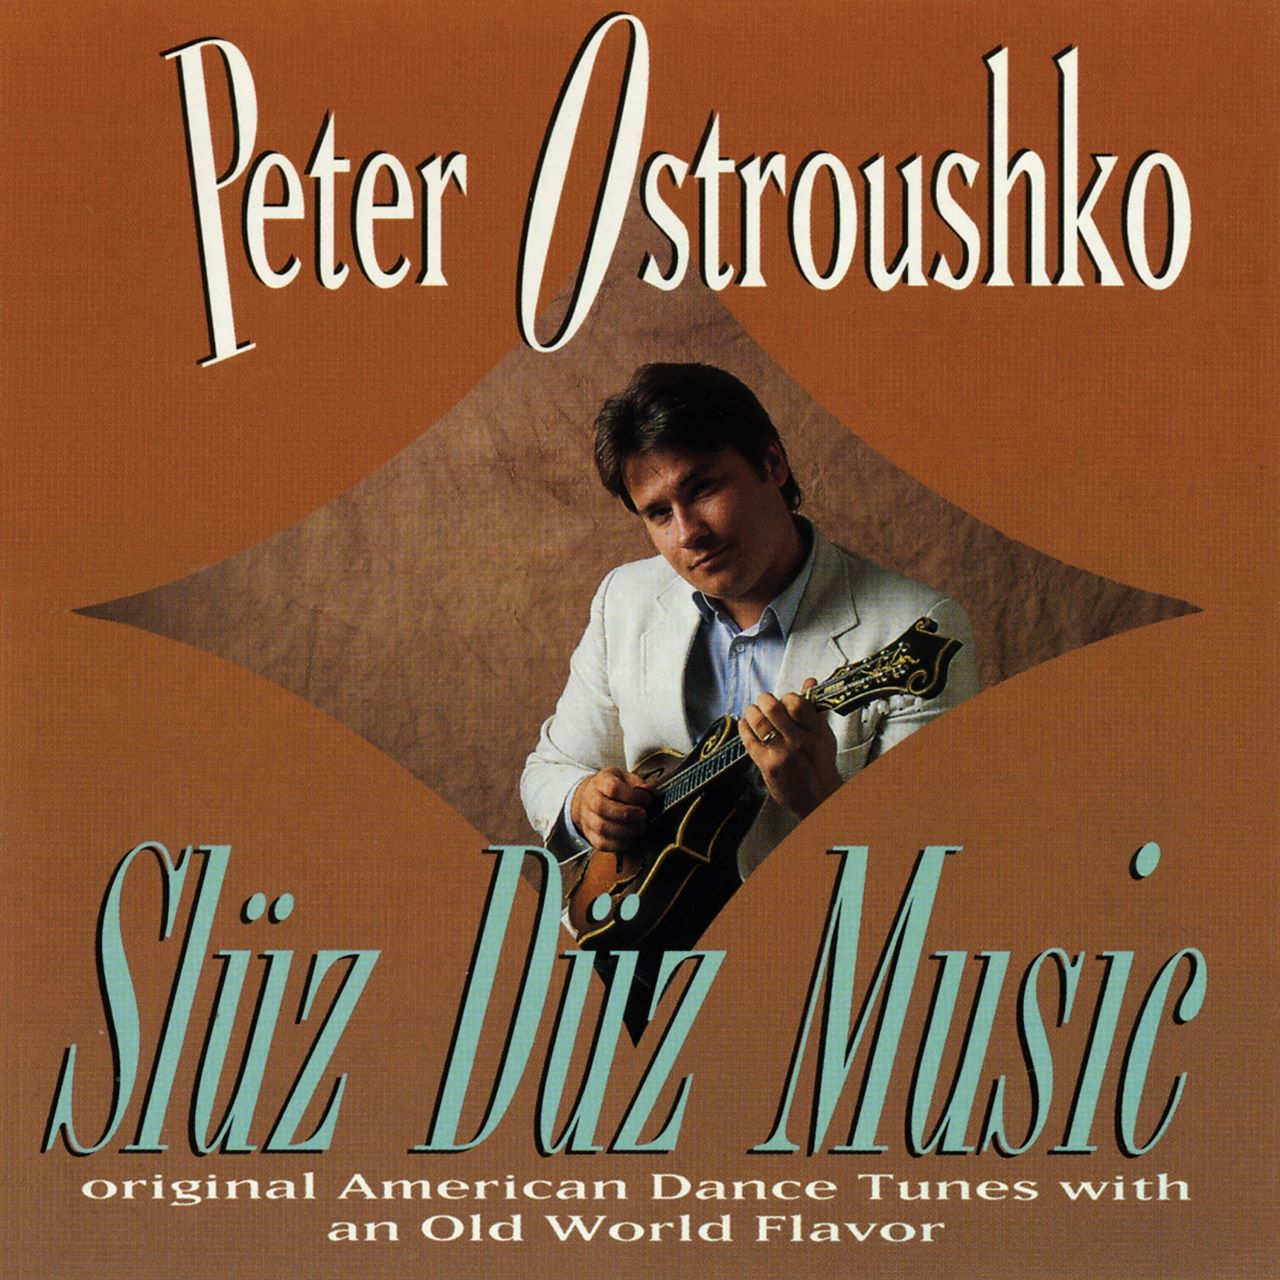 Peter Ostroushko - Sluz Duz Music cover album